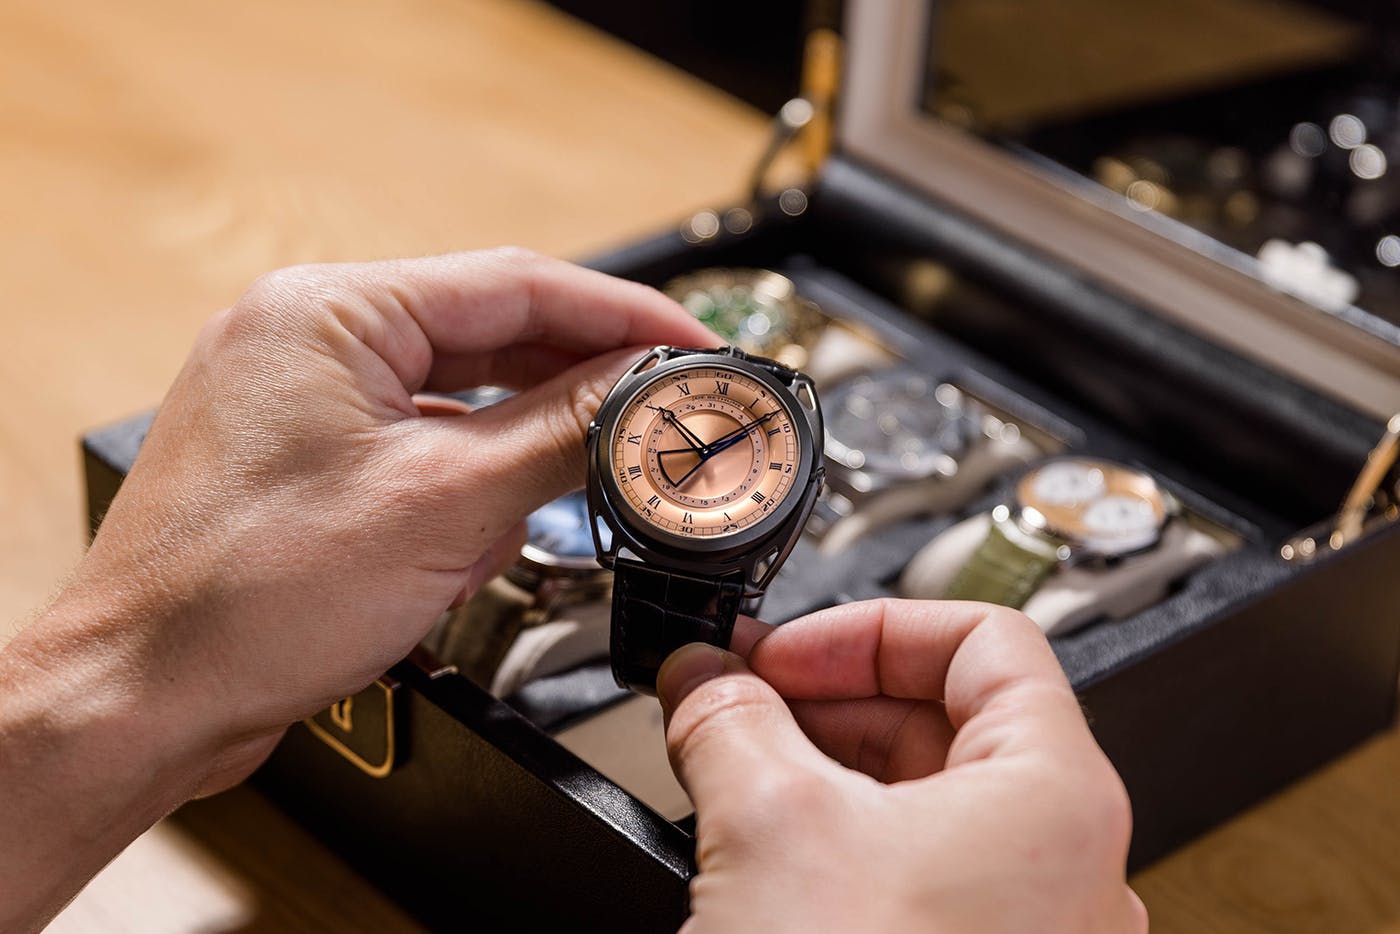 Wrist Watches - Buy Branded Watches | Men's & Ladies Wrist/Hand Watches  Online at Best Prices - Flipkart.com